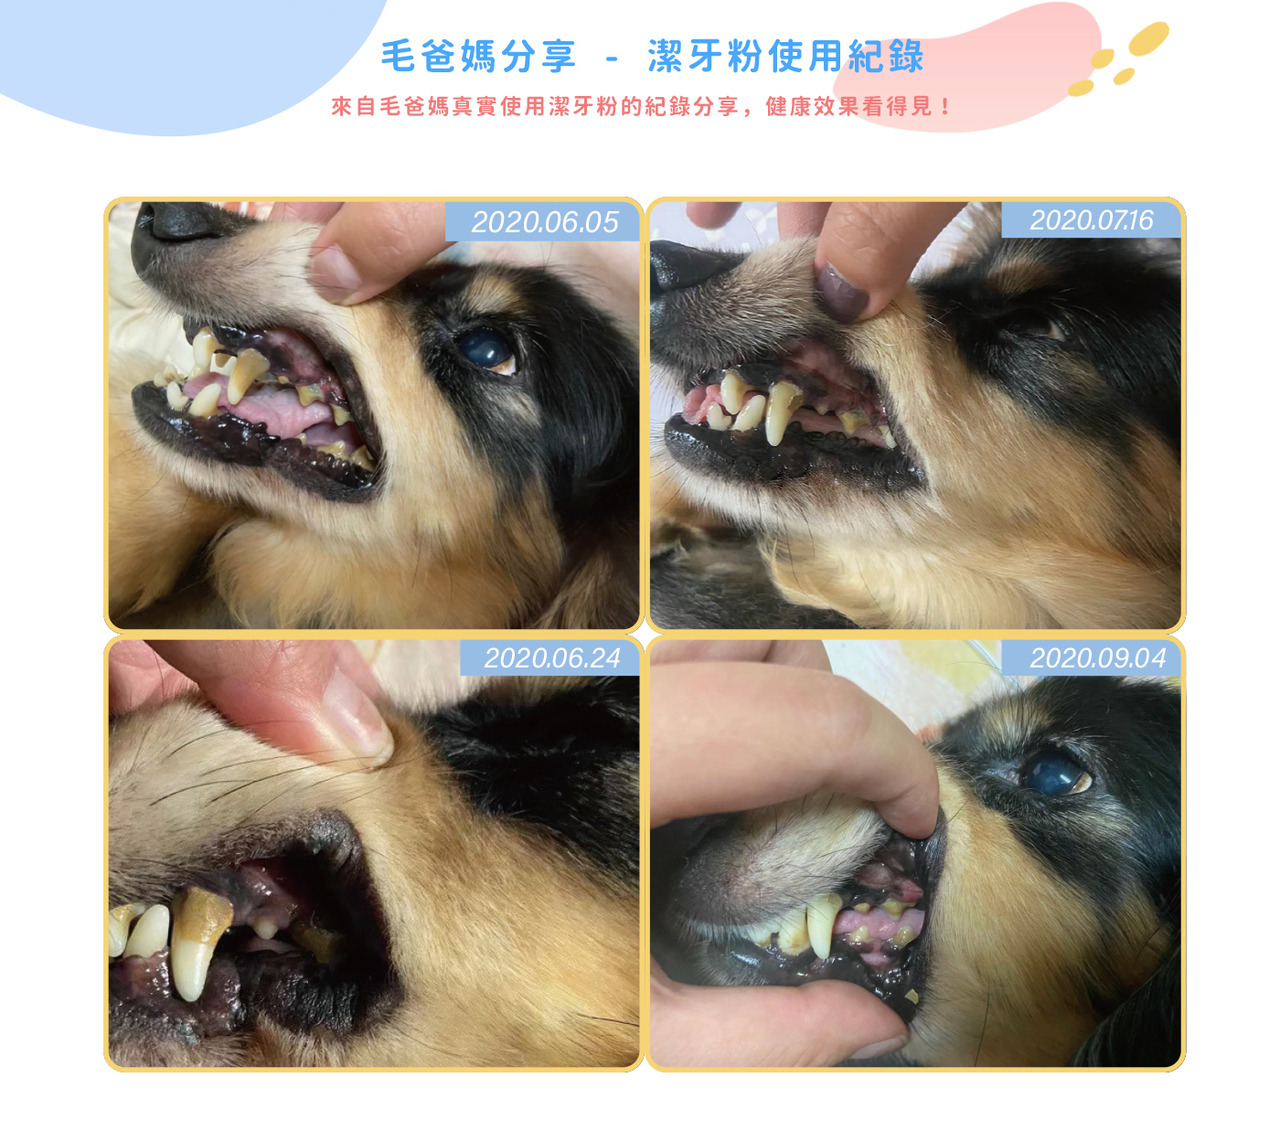 樂健飛-犬用寵物超級褐藻潔牙粉